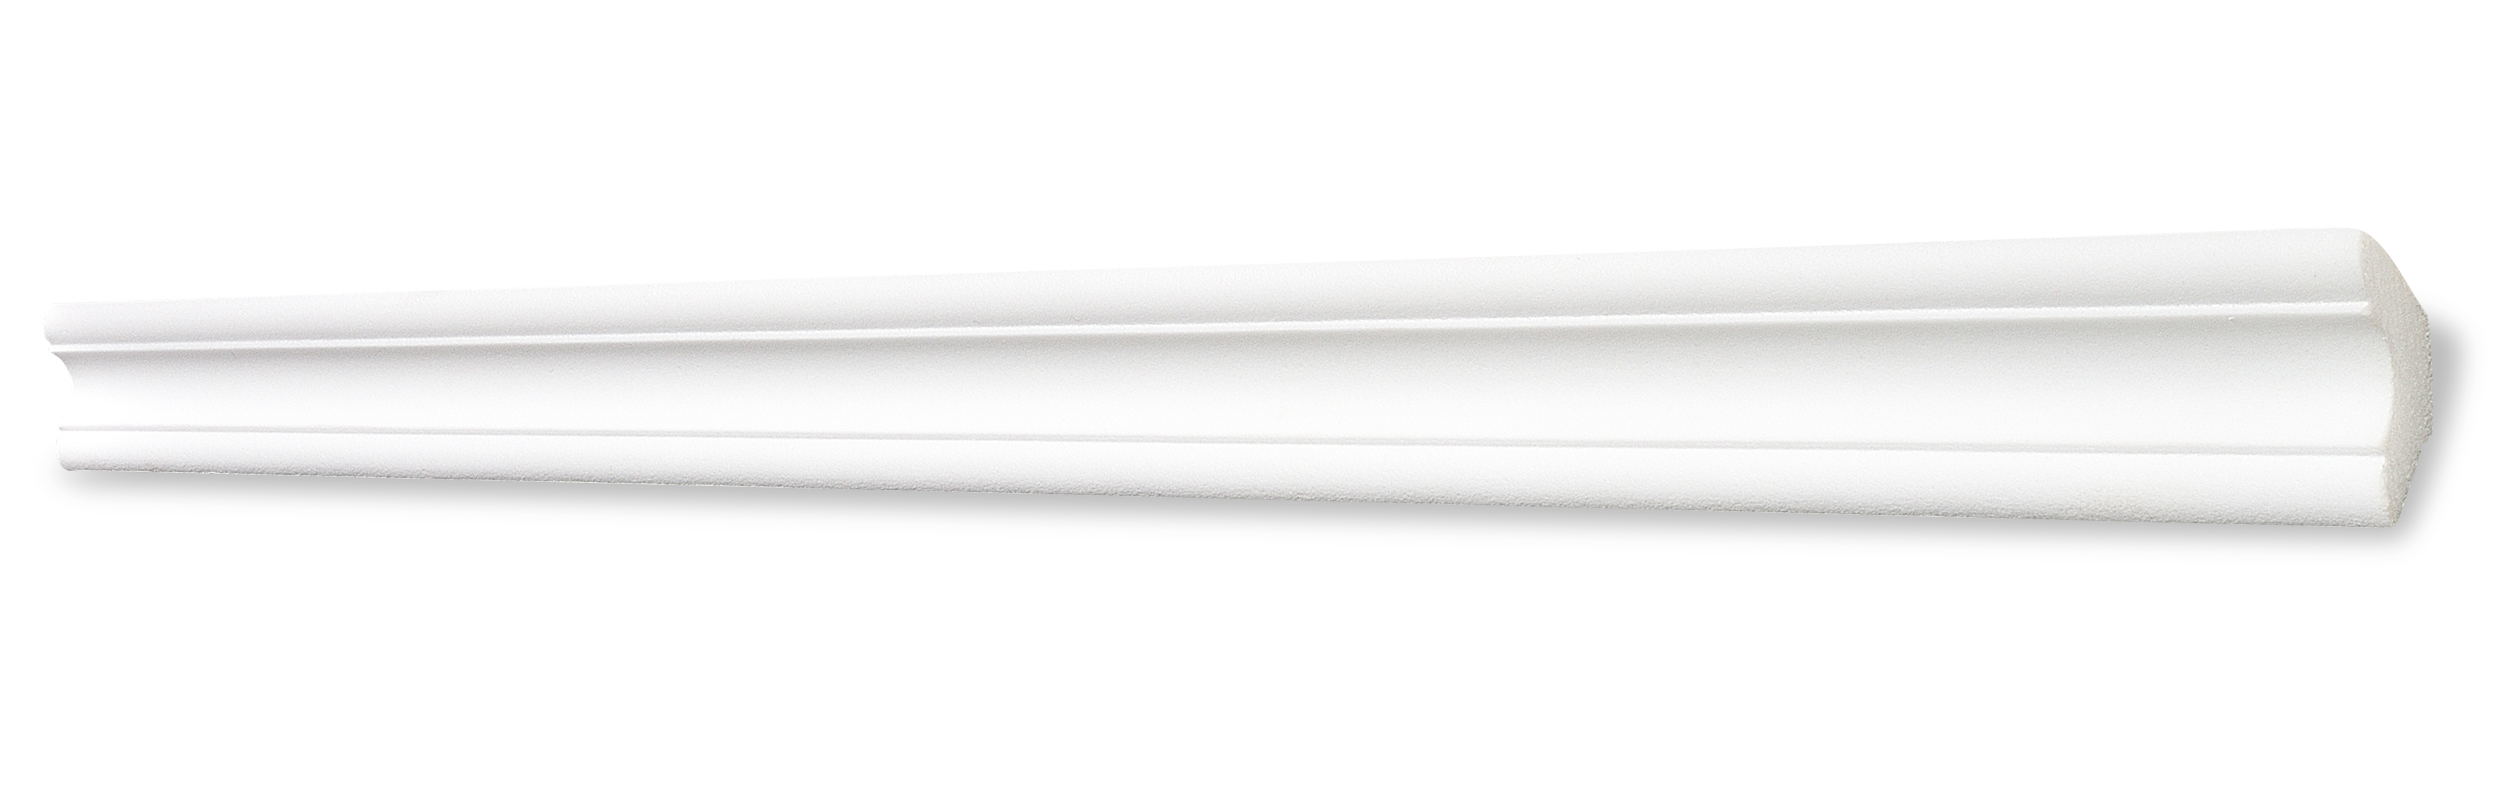 Decosa Deckenleiste A40 (Simone), weiß, 30 x 30 mm, Länge: 2 m